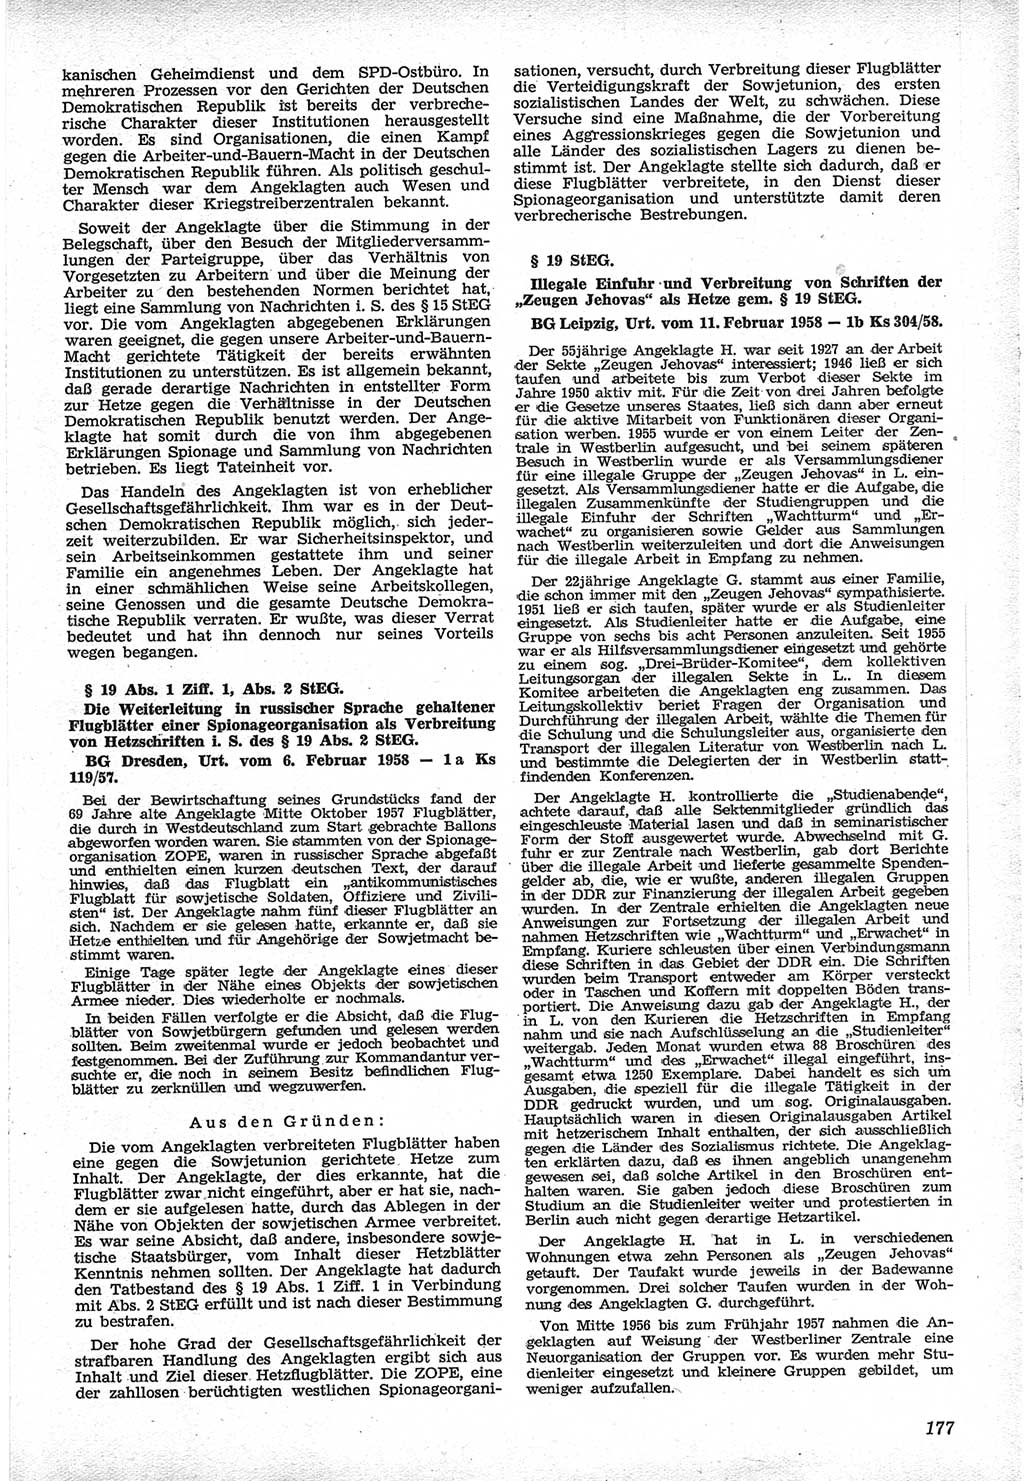 Neue Justiz (NJ), Zeitschrift für Recht und Rechtswissenschaft [Deutsche Demokratische Republik (DDR)], 12. Jahrgang 1958, Seite 177 (NJ DDR 1958, S. 177)